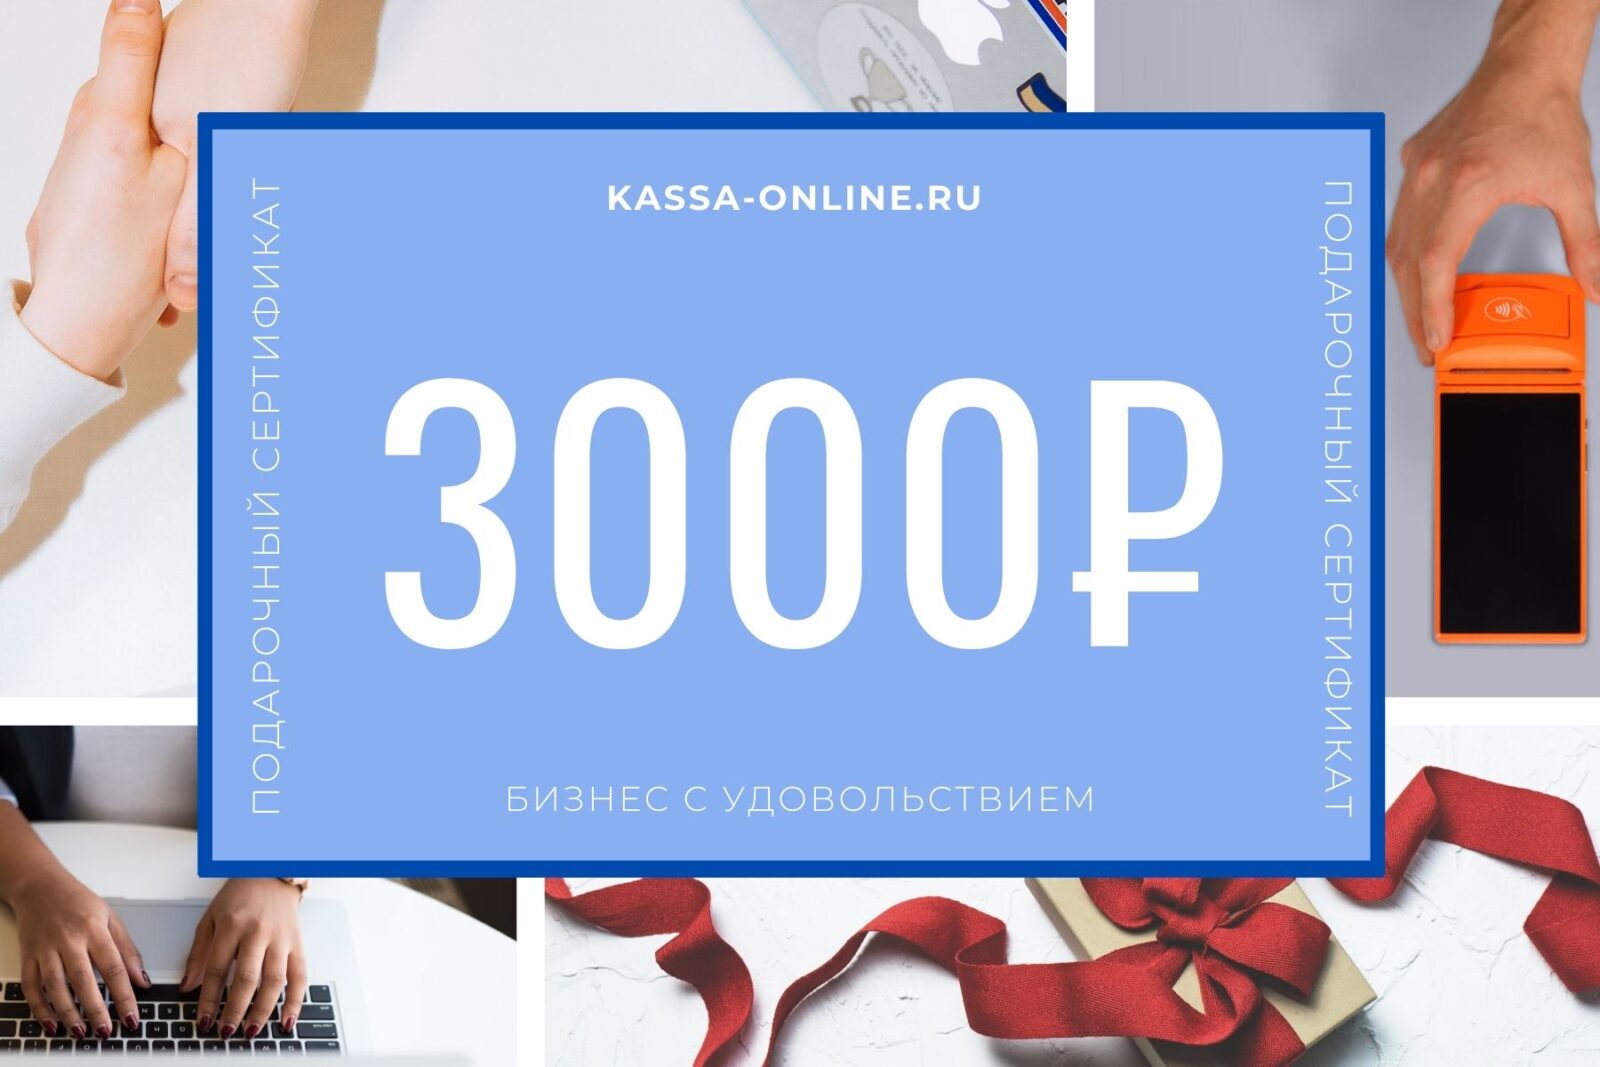 бесплатные вращения Kassu 100 руб